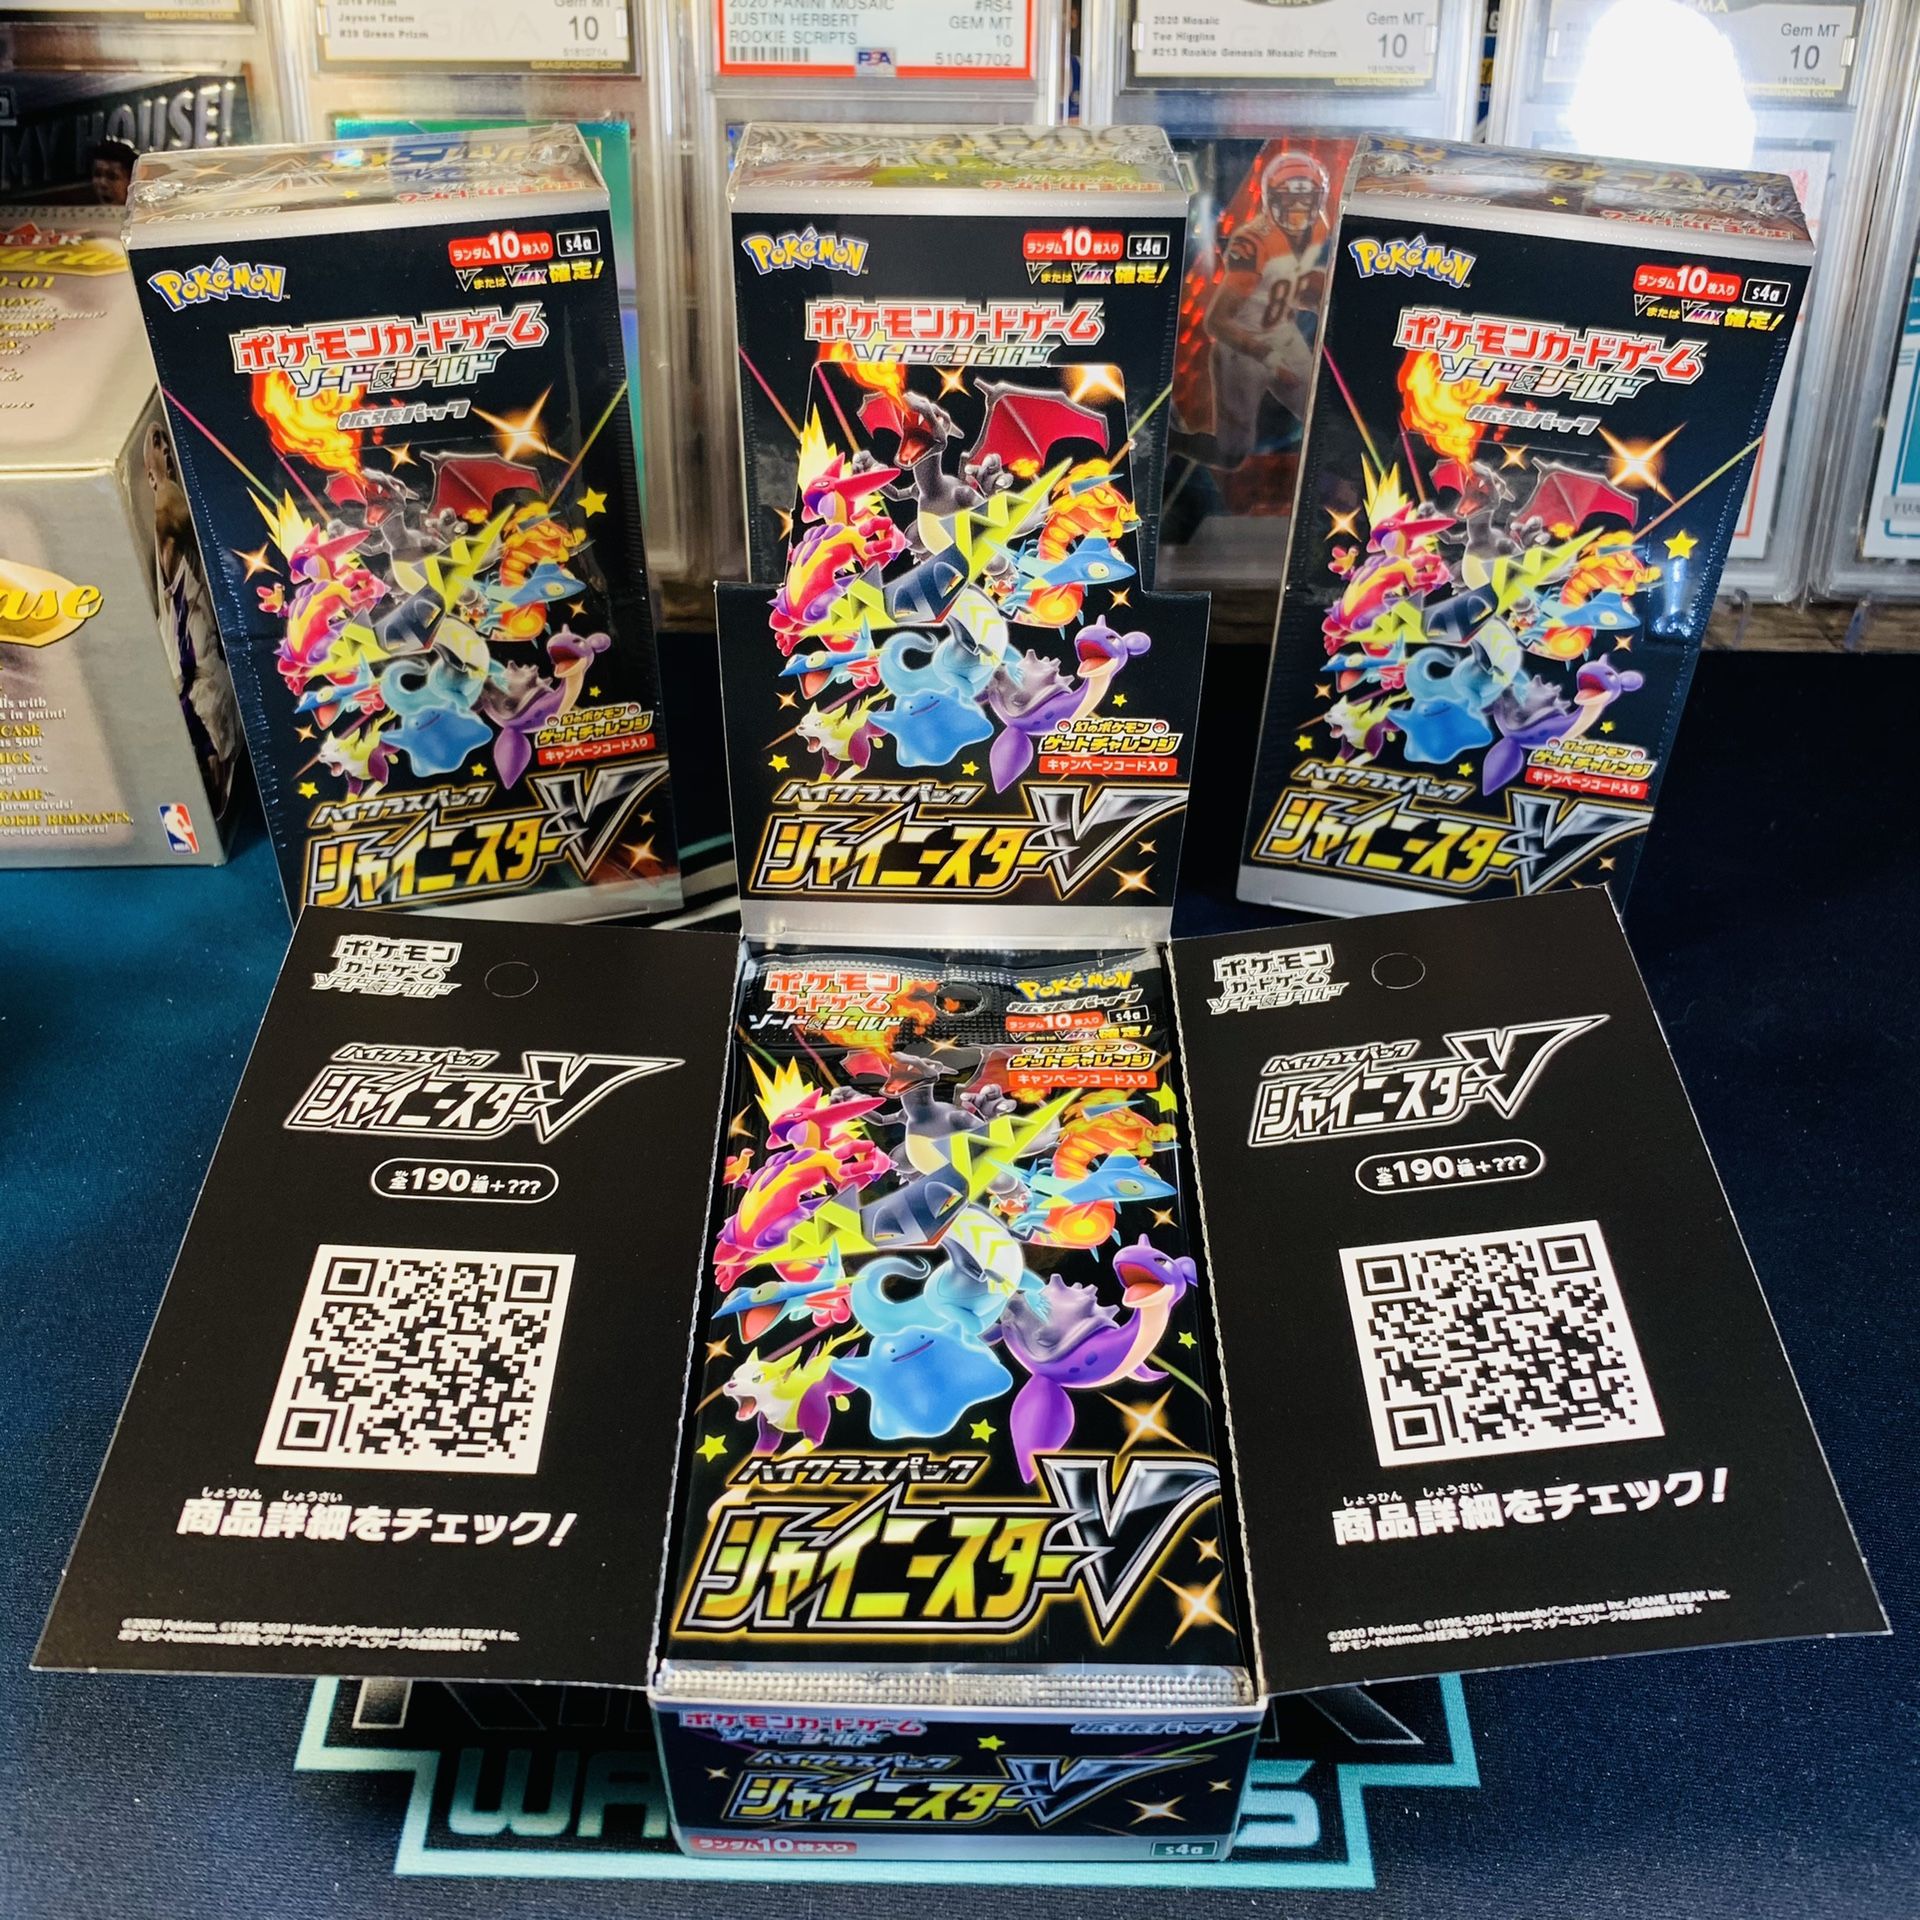 Japanese Pokémon s4s shiny star v booster pack